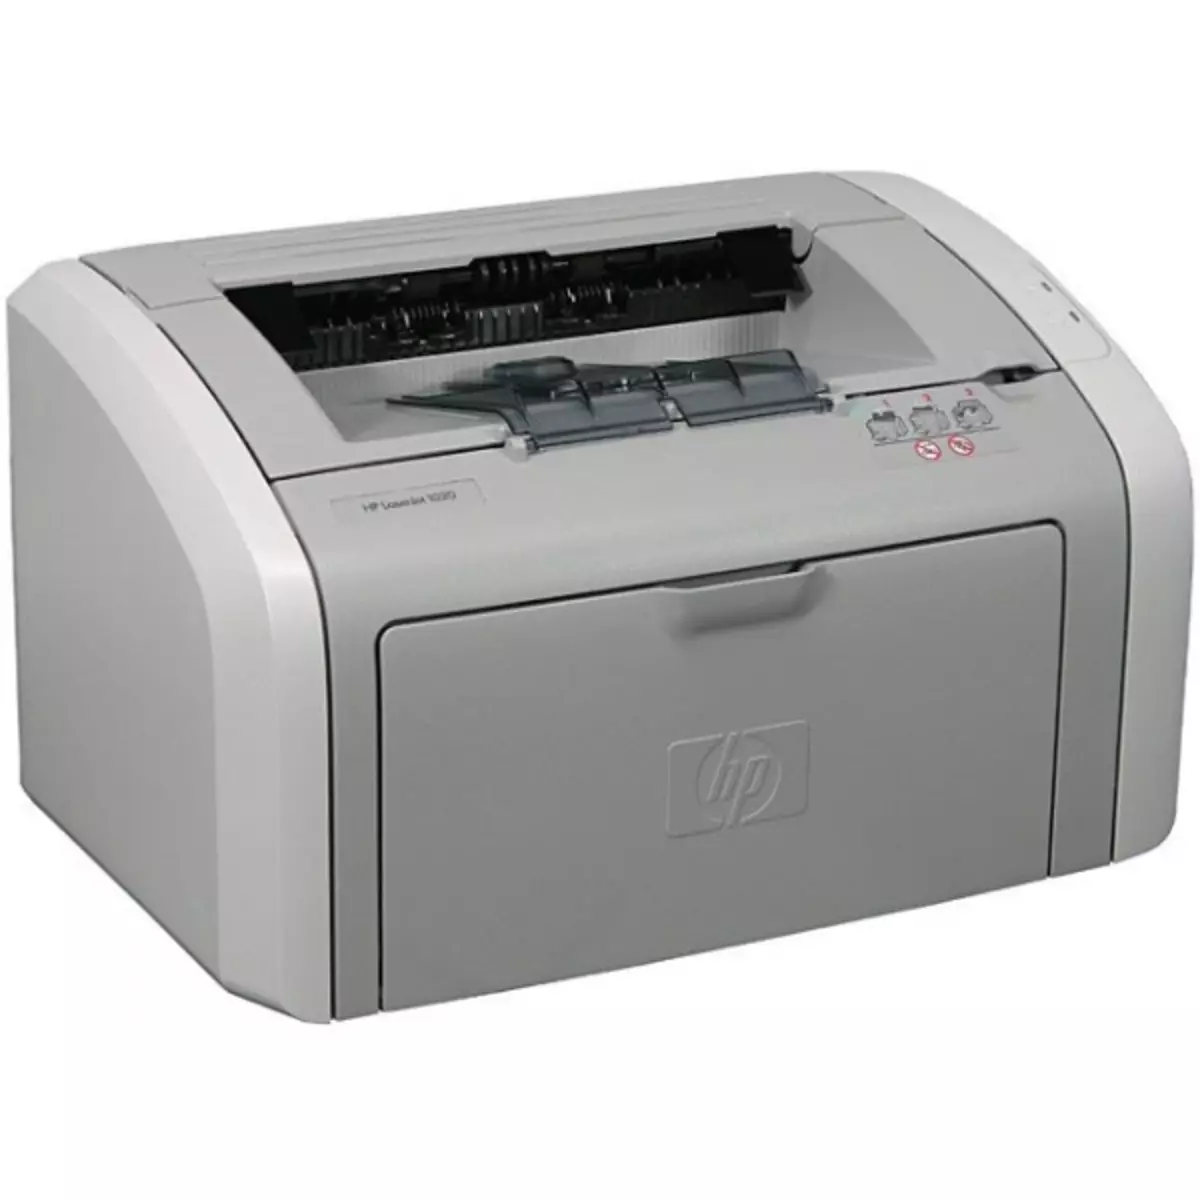 Download mpamily ho an'ny HP Laserjet 1020 Printer